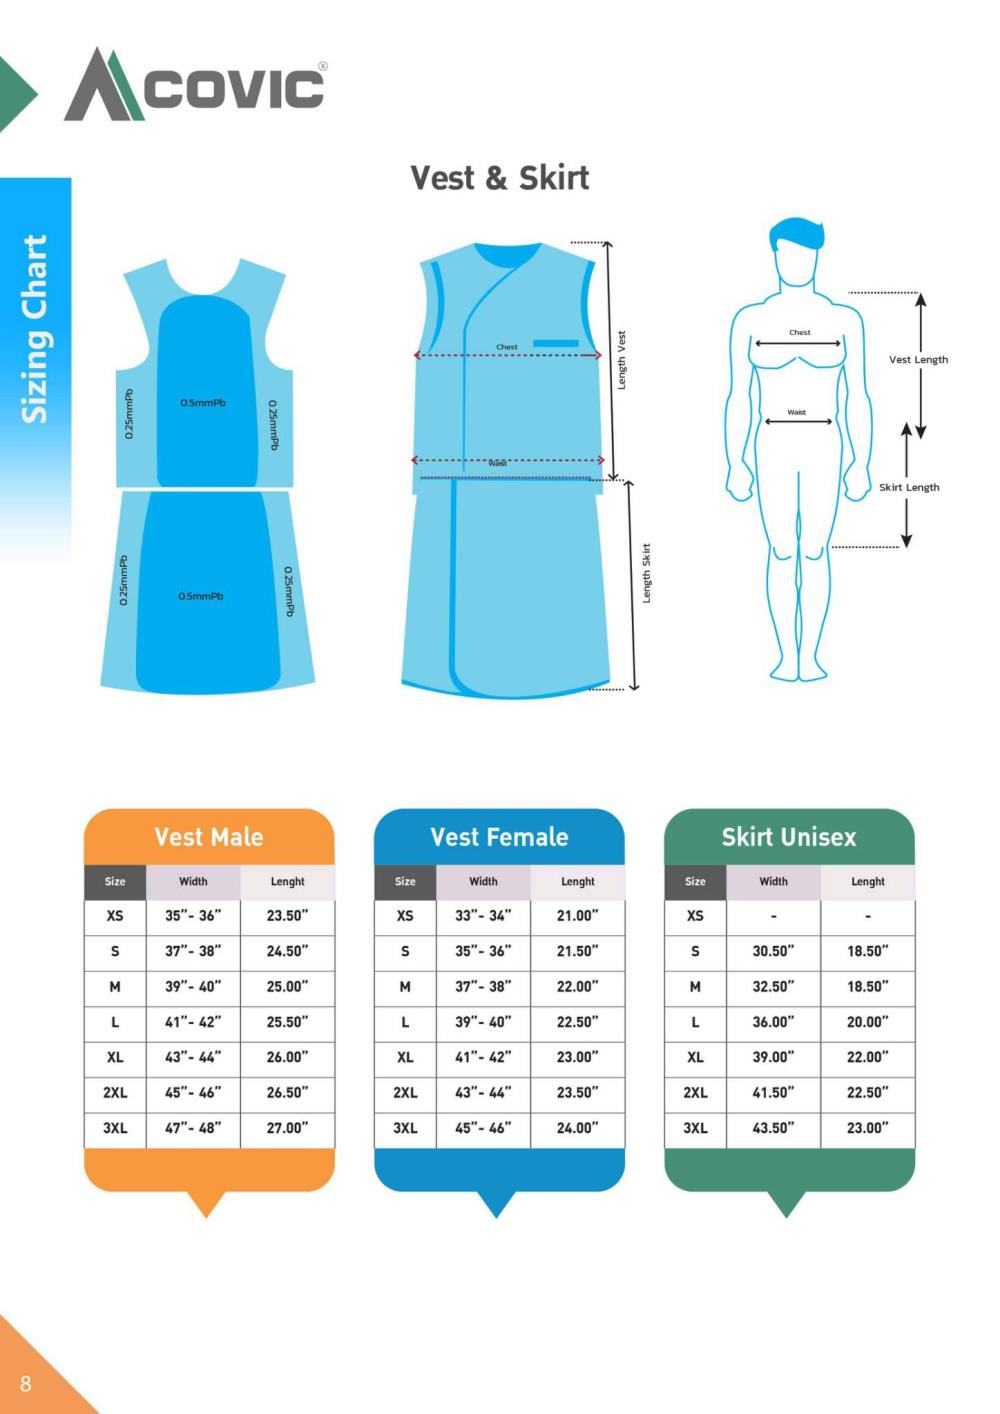 ชุด Vest & Skirt ป้องกันกันรังสี x-ray 0.5 mmPb